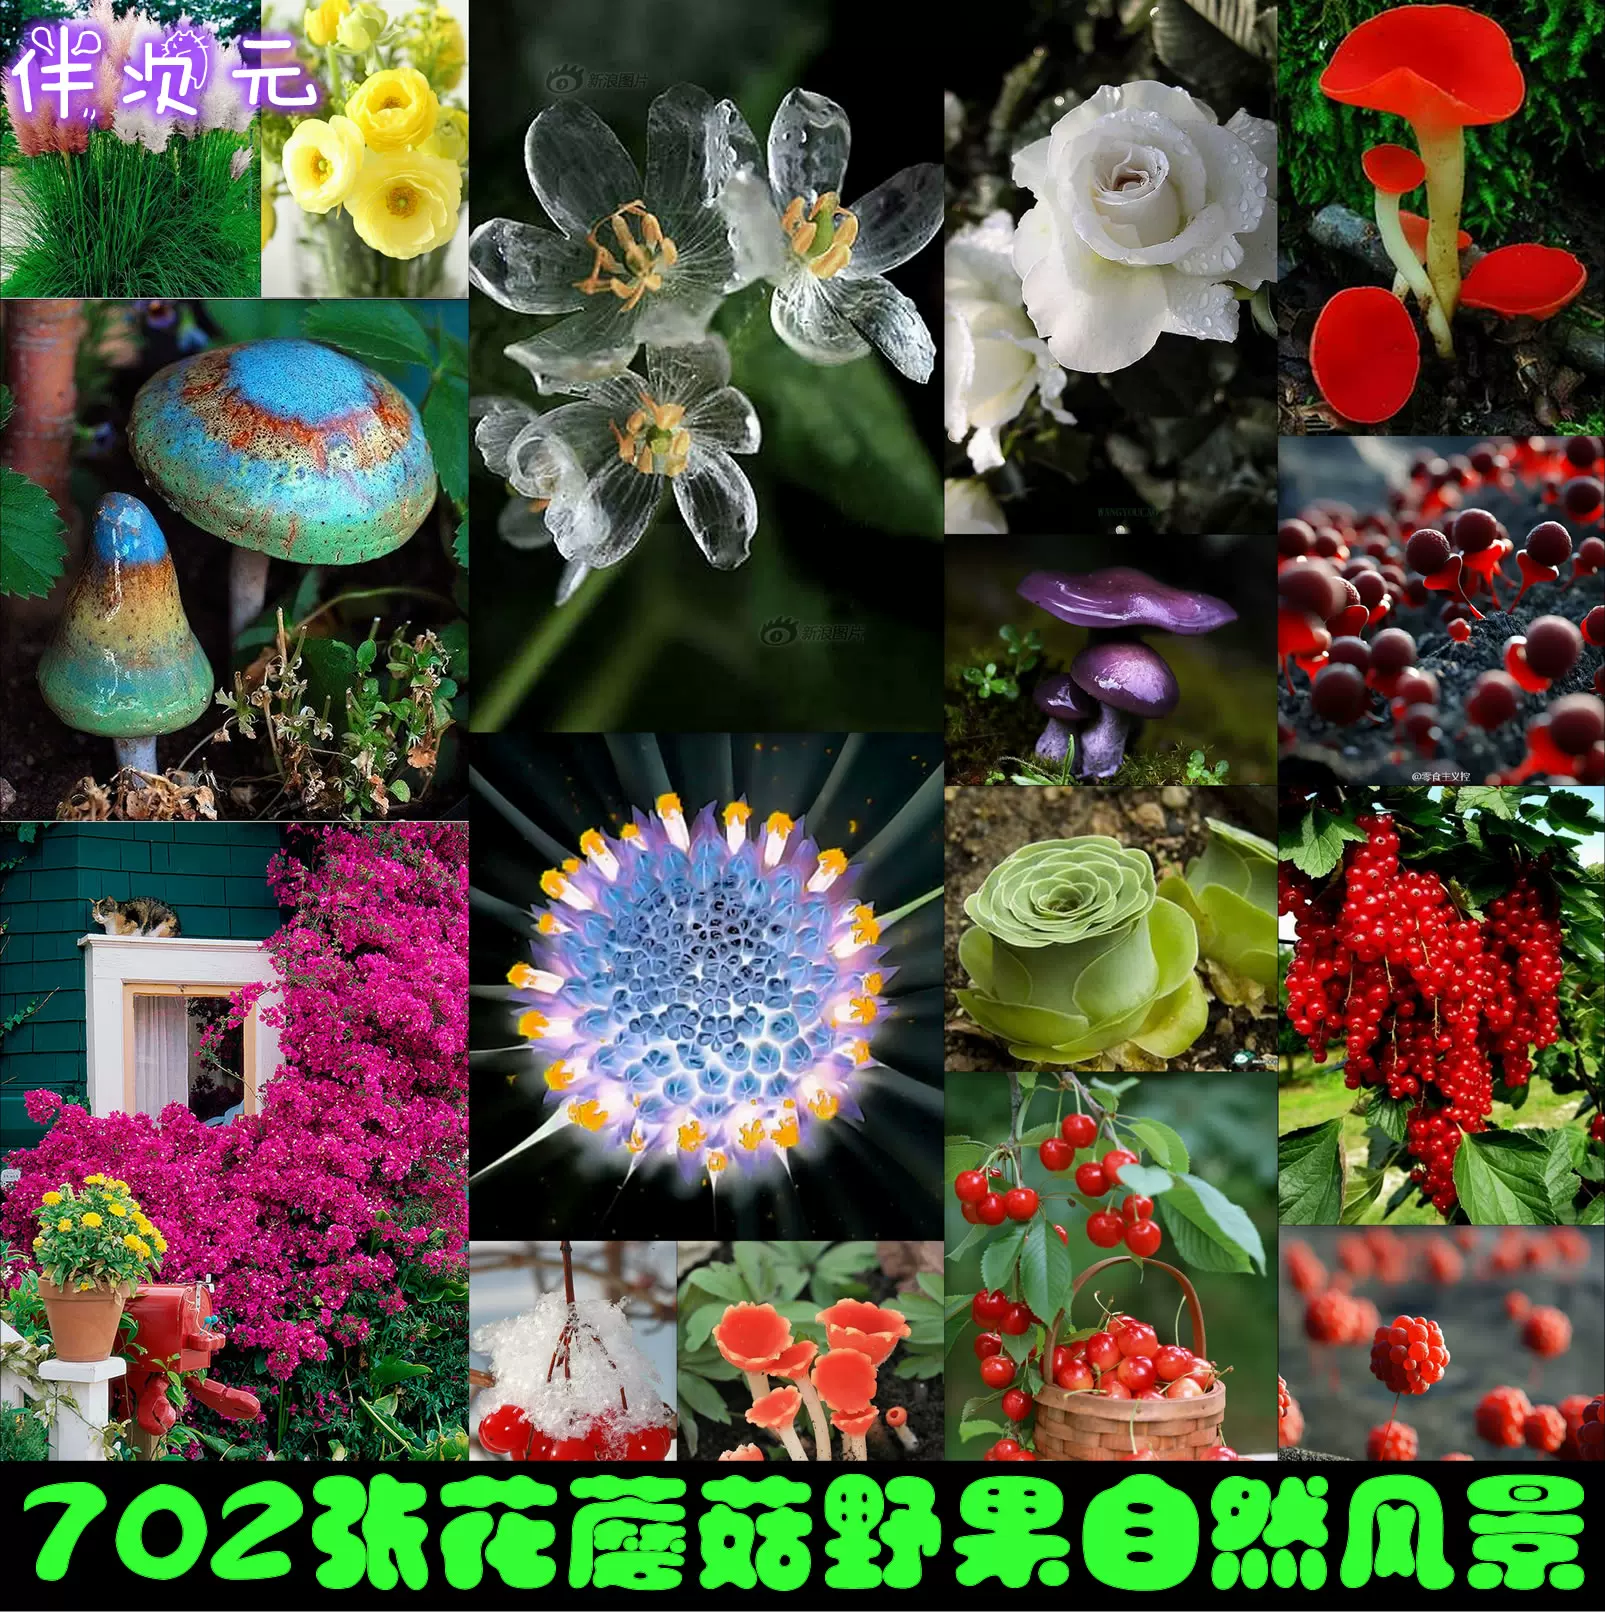 702张花蘑菇自然摄影图片集游戏美术原画设计建模设定